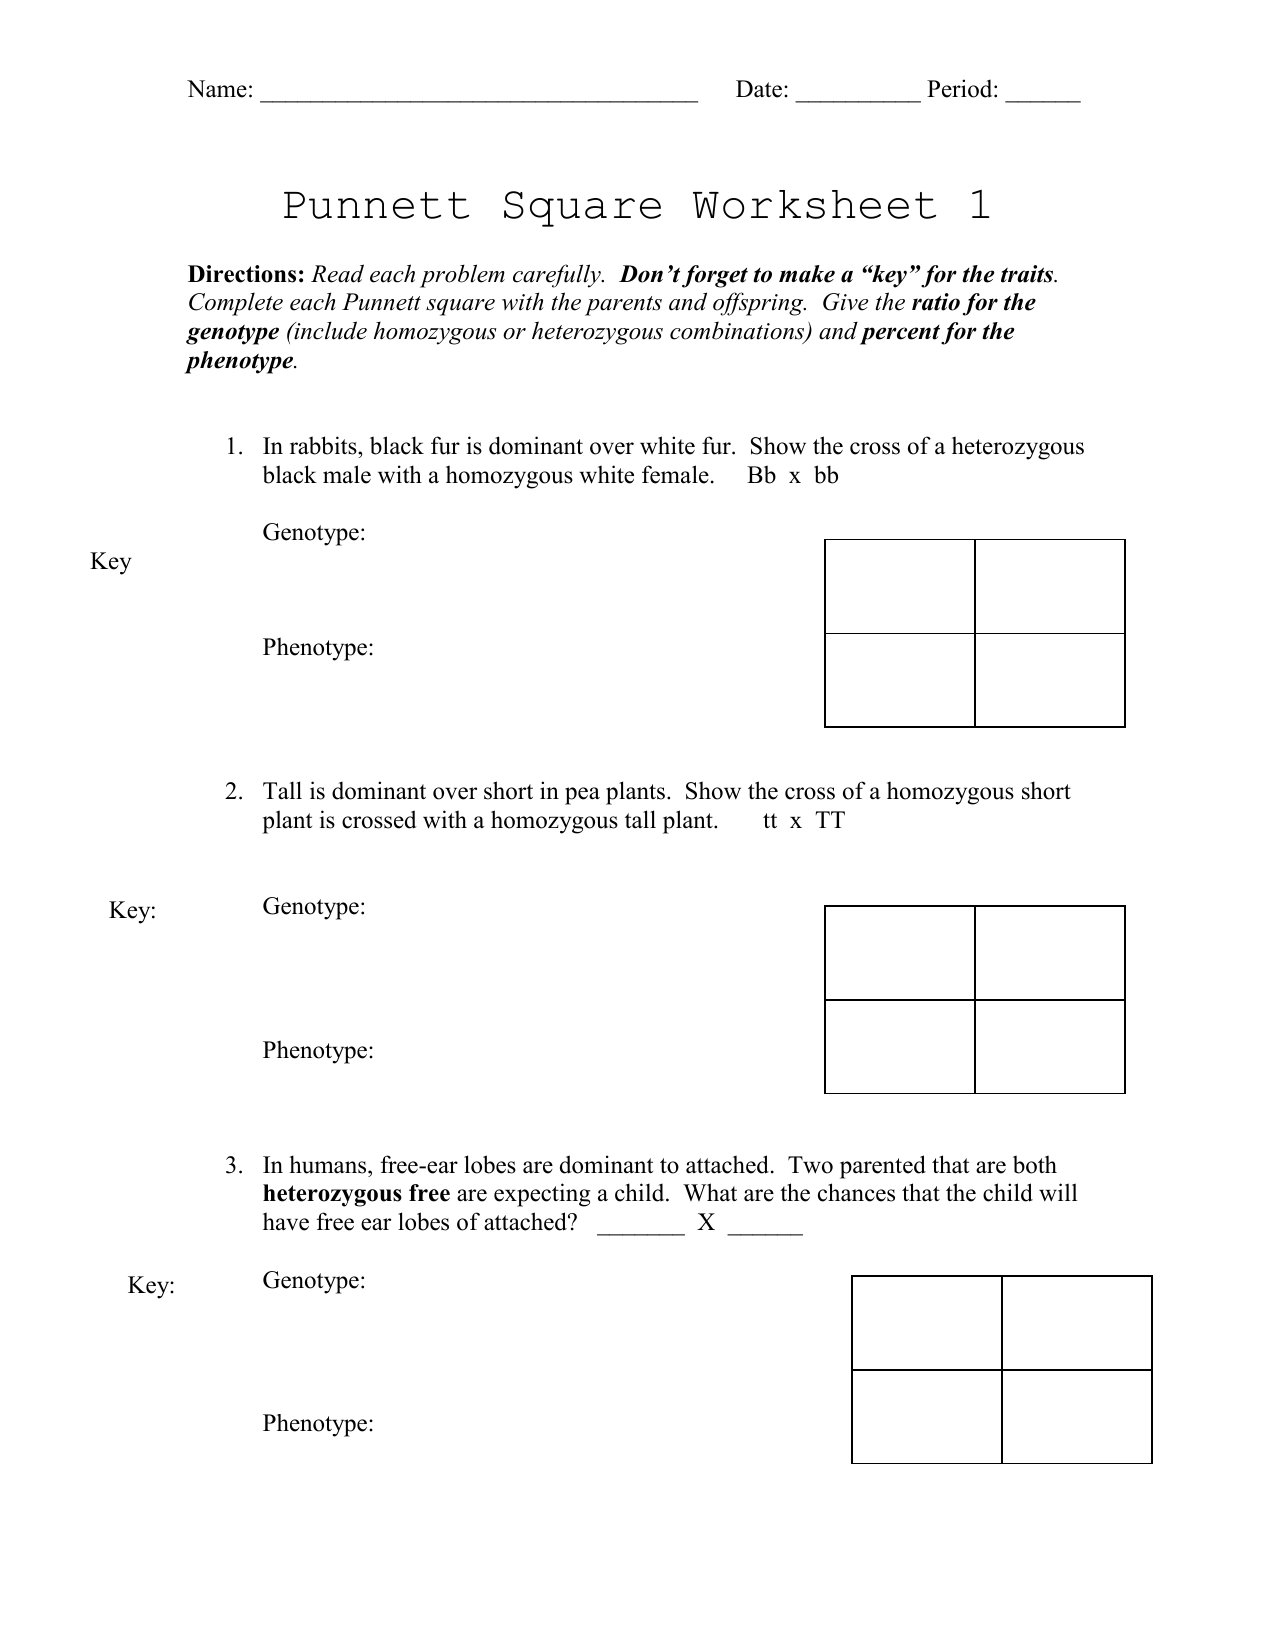 punnett-squares-worksheet